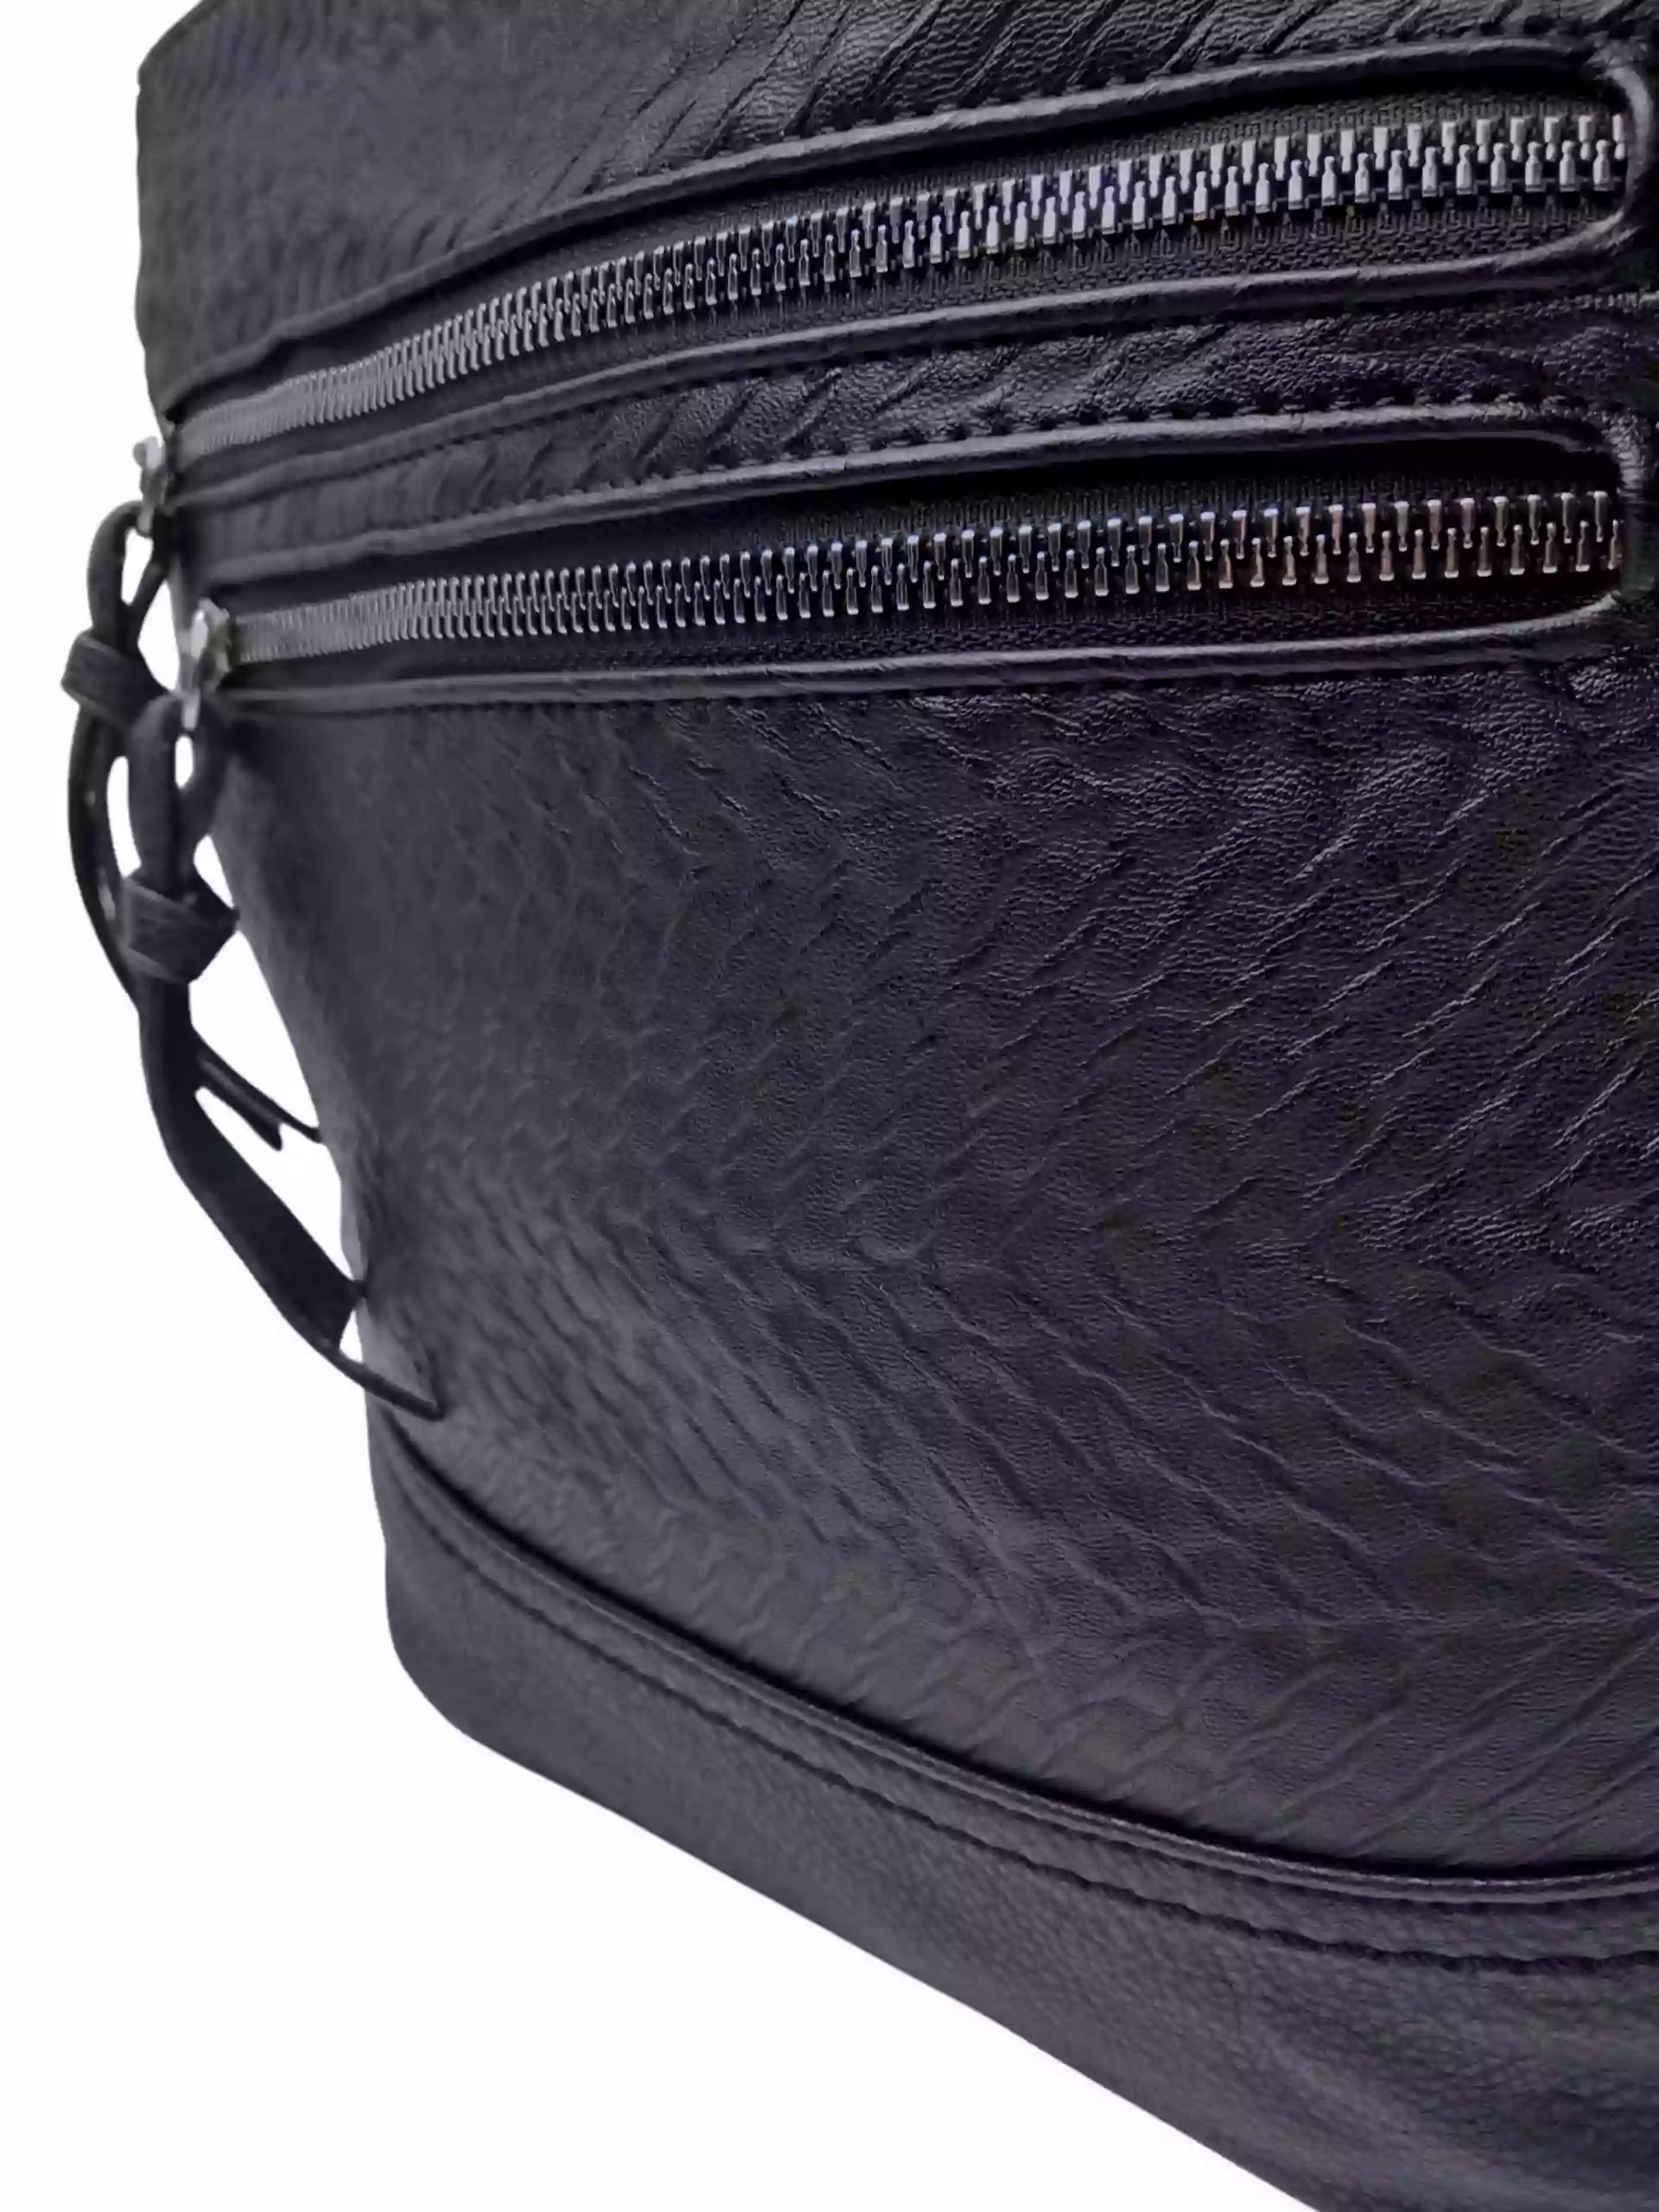 Černá crossbody kabelka s moderní texturou, Tapple, H20434, detail crossbody kabelky